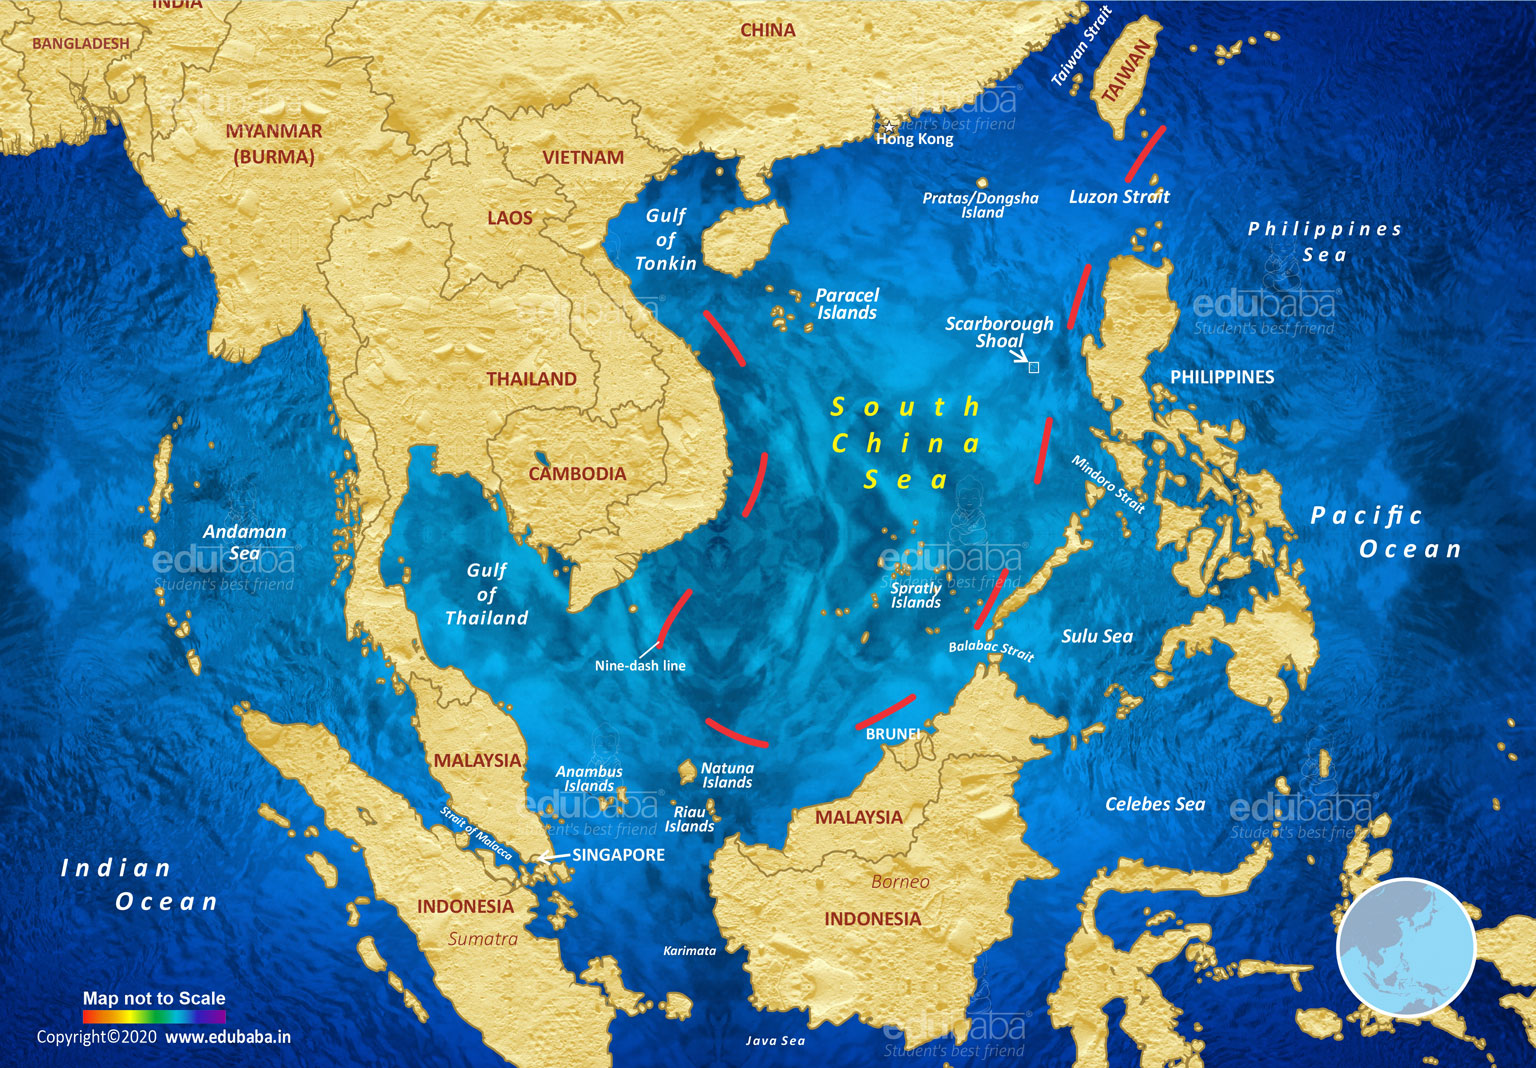 Η προσέγγιση του Πεκίνου απειλεί την ηρεμία στη Νότια Σινική θάλασσα